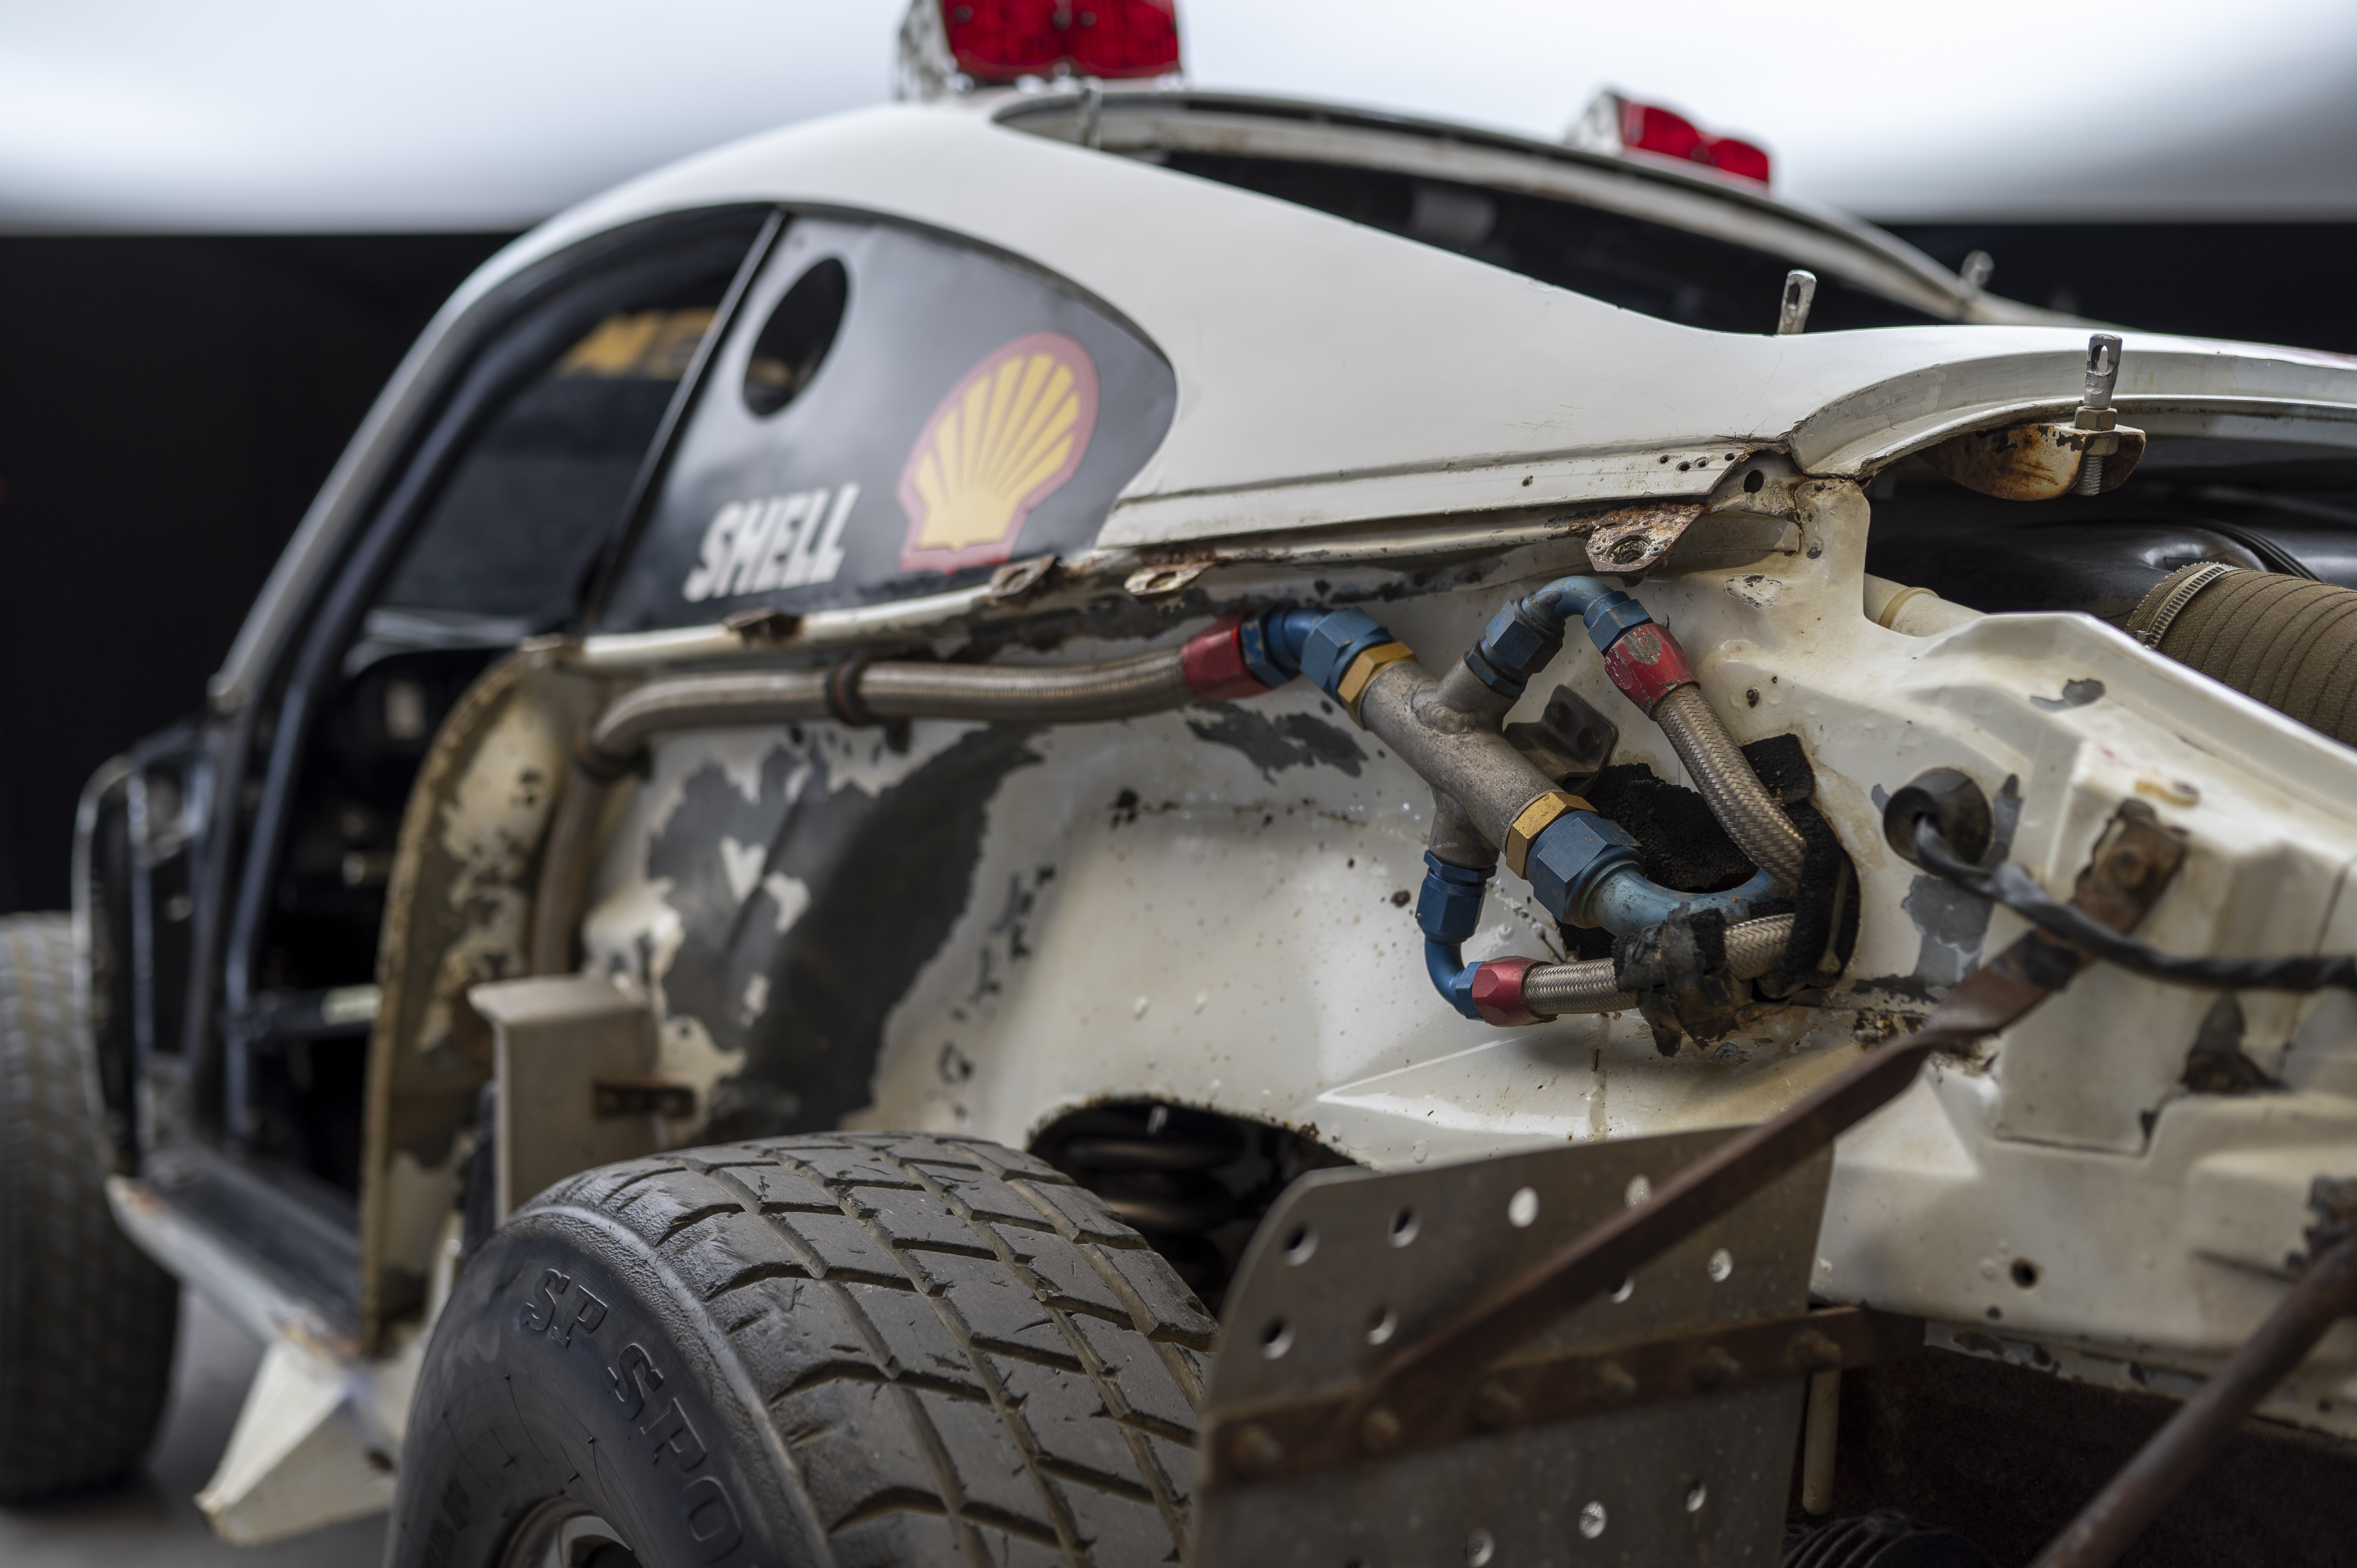 Close-up of disassembled rear section of Porsche 959 Paris-Dakar car